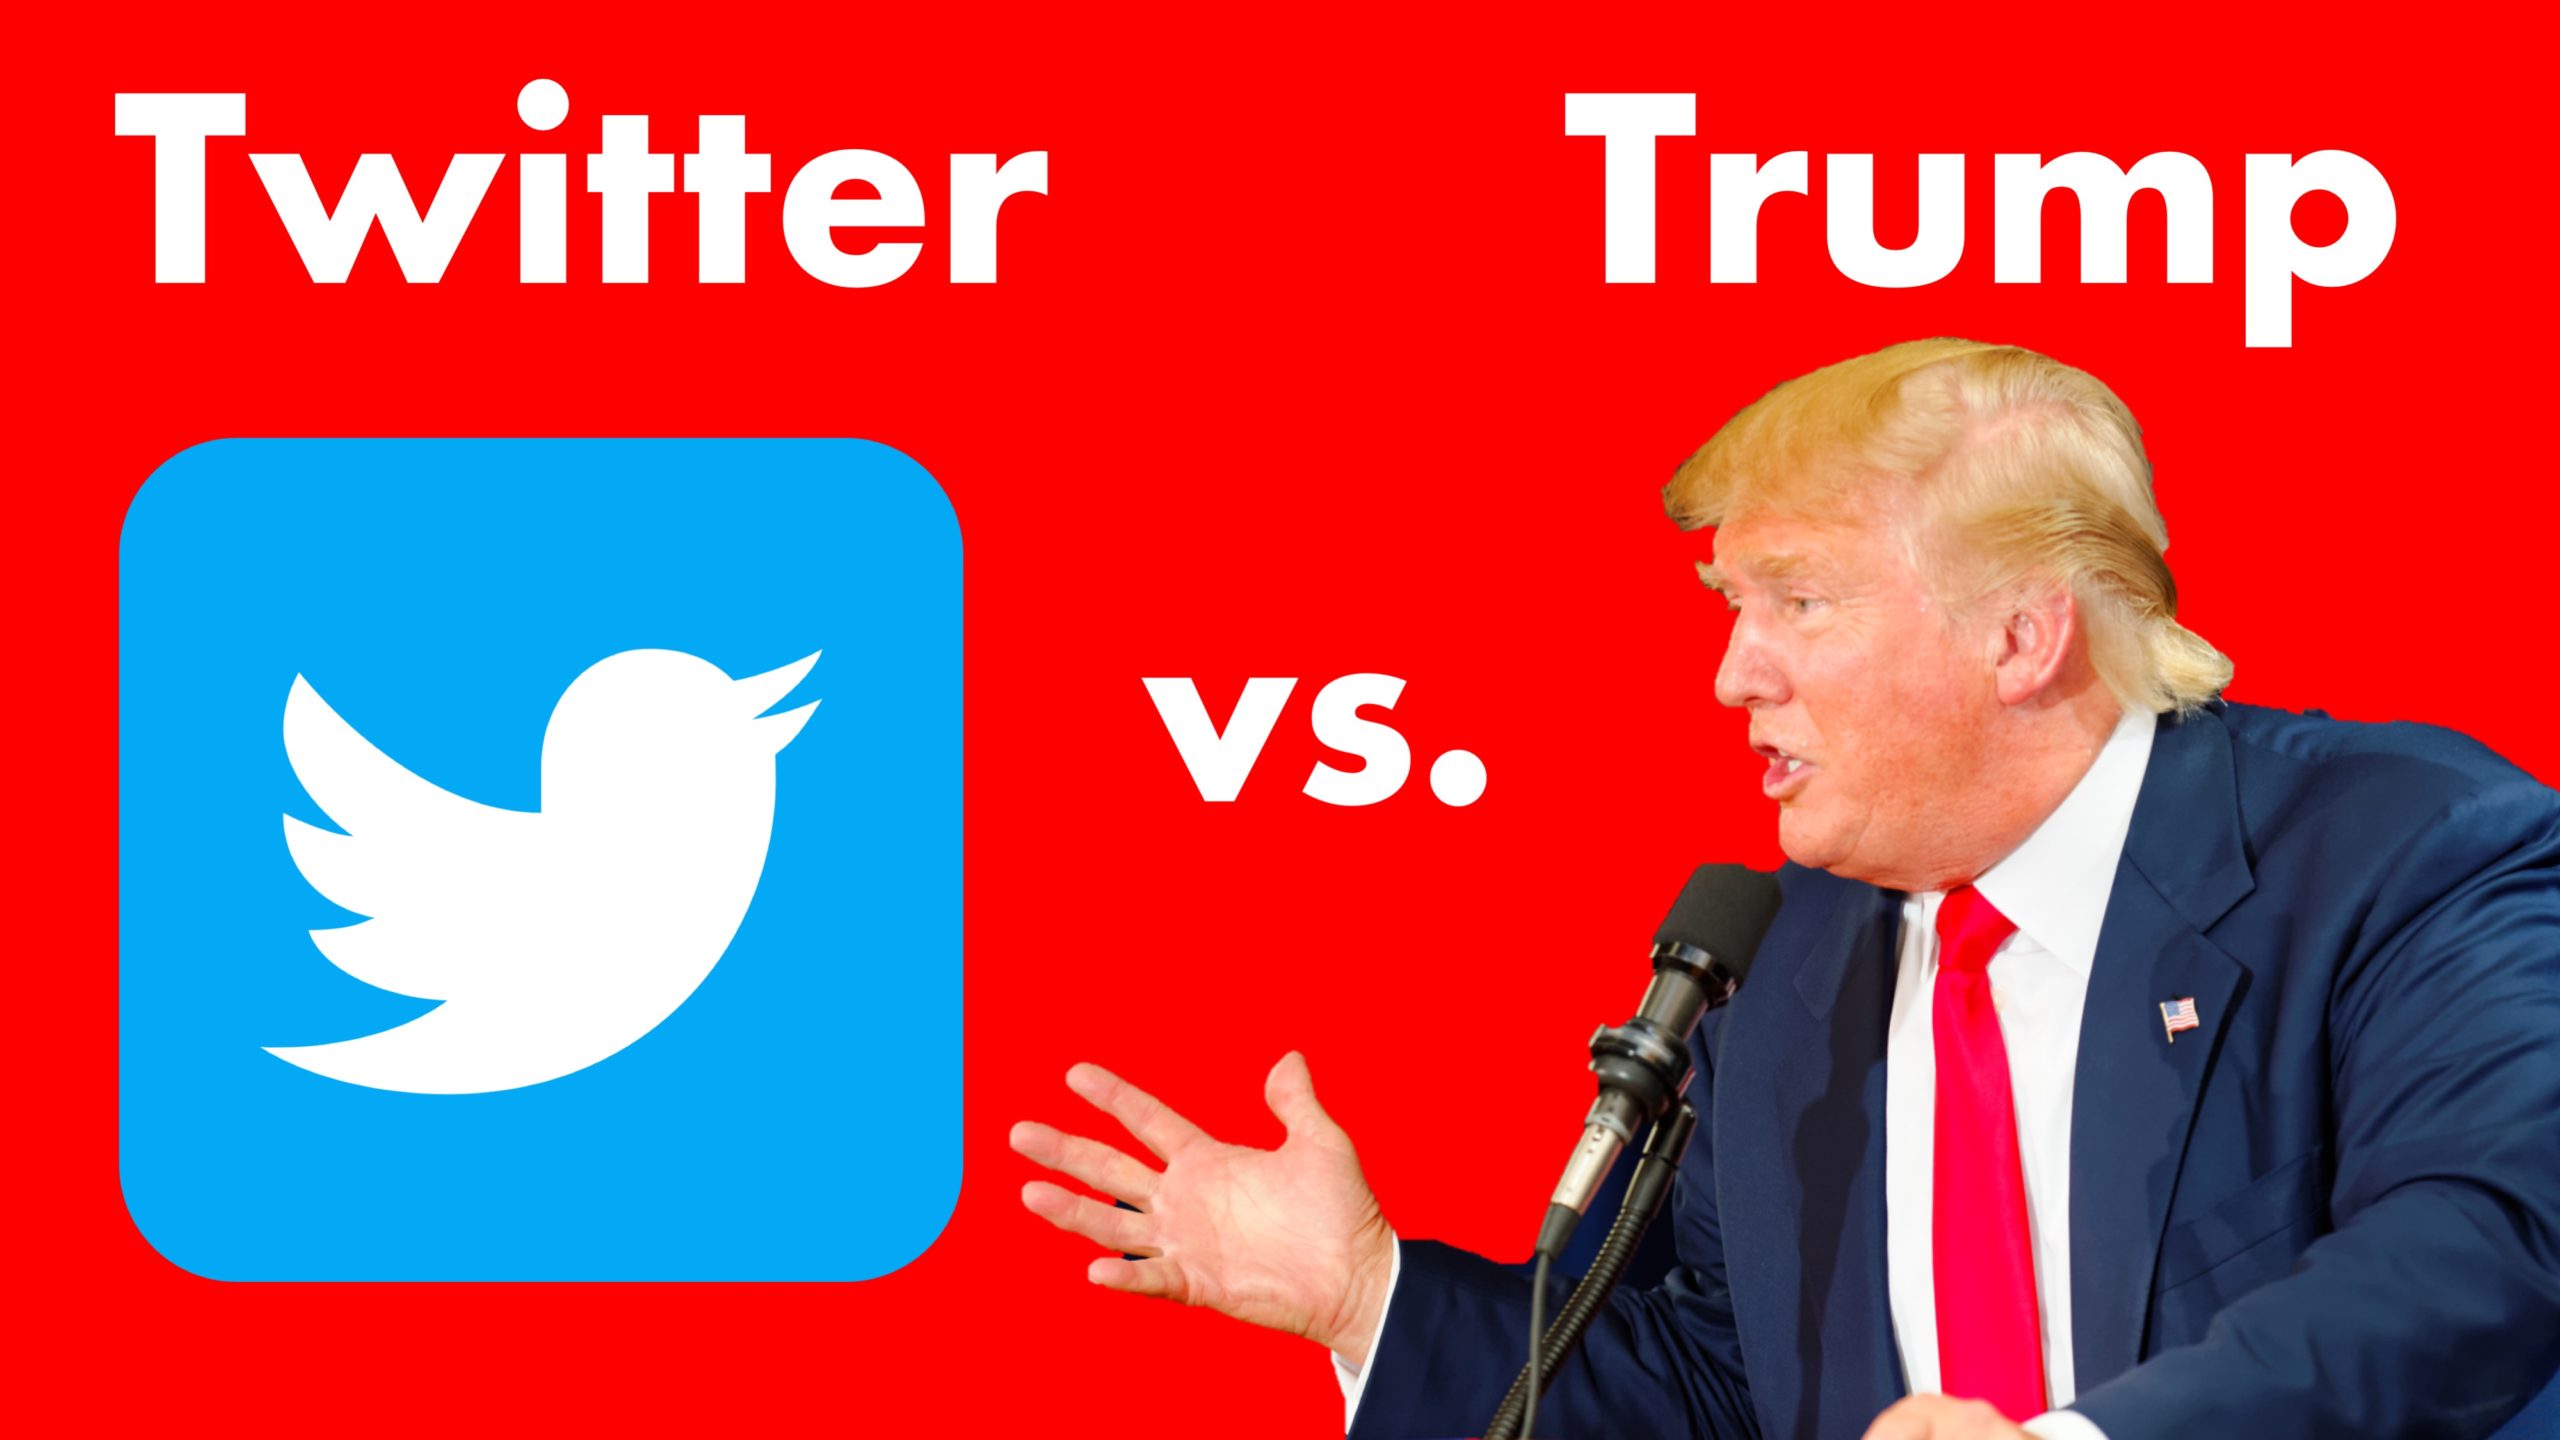 Trump vs. Twitter